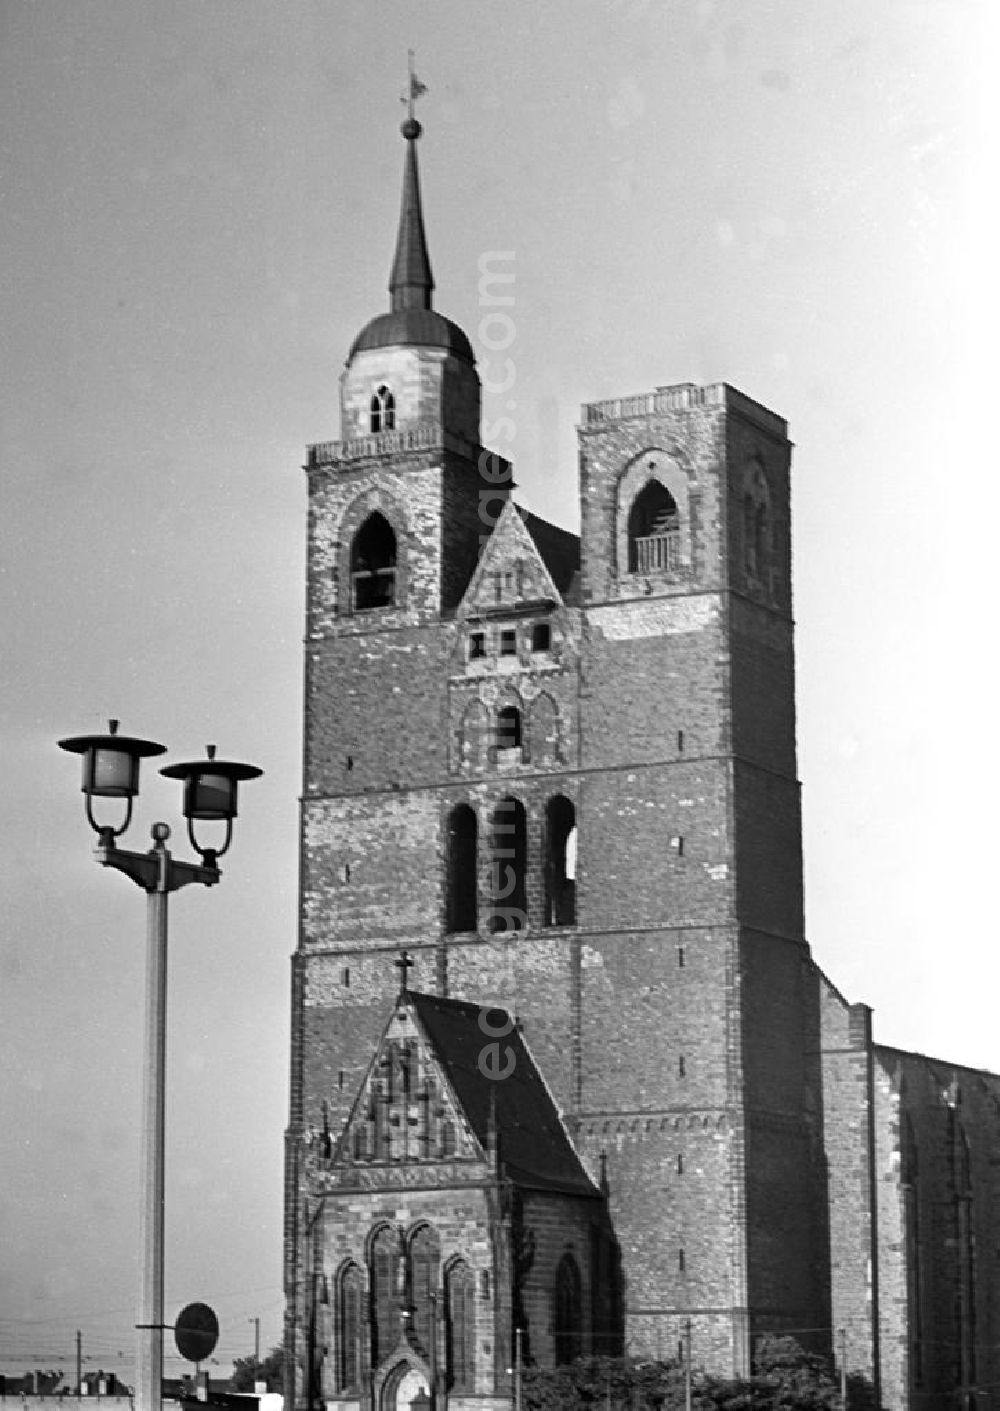 Magdeburg: Blick auf die St.-Johannis-Kirche in Magdeburg. Nachdem Magdeburg durch die Bombenangriffe im Zweiten Weltkrieg weitgehend zerstört worden war, begann in den 5